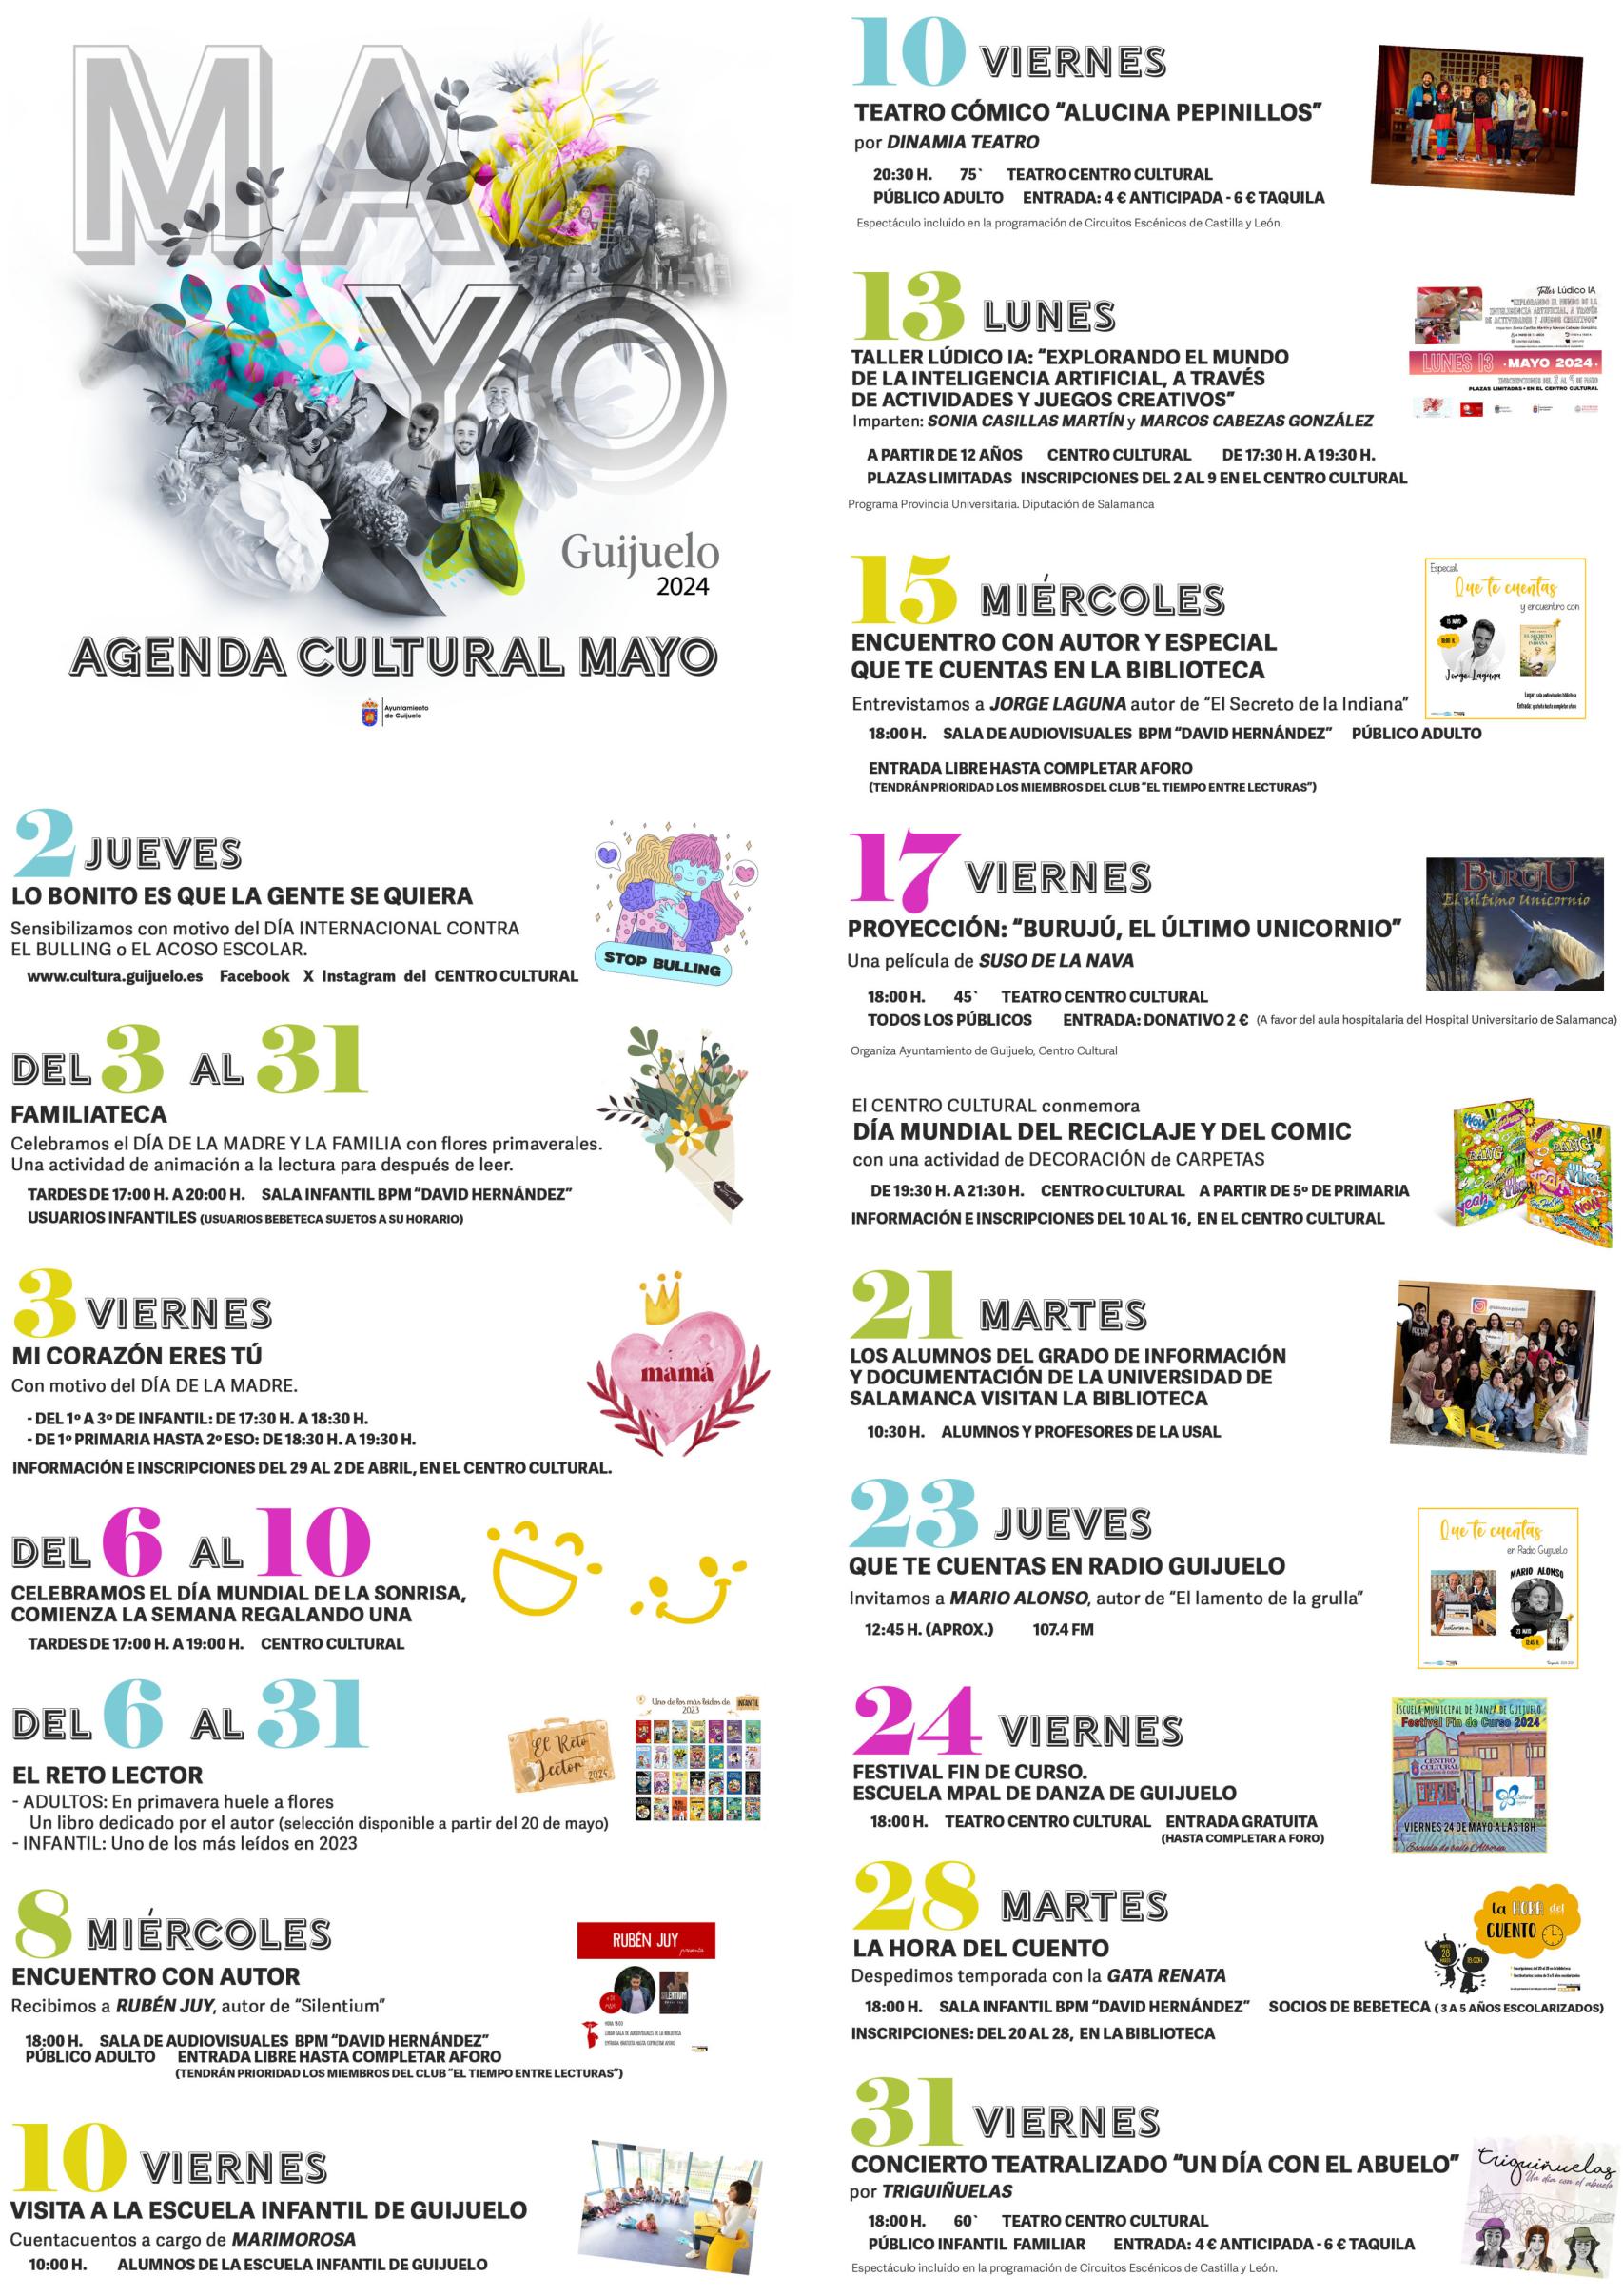 Agenda cultural del mes de mayo en Guijuelo